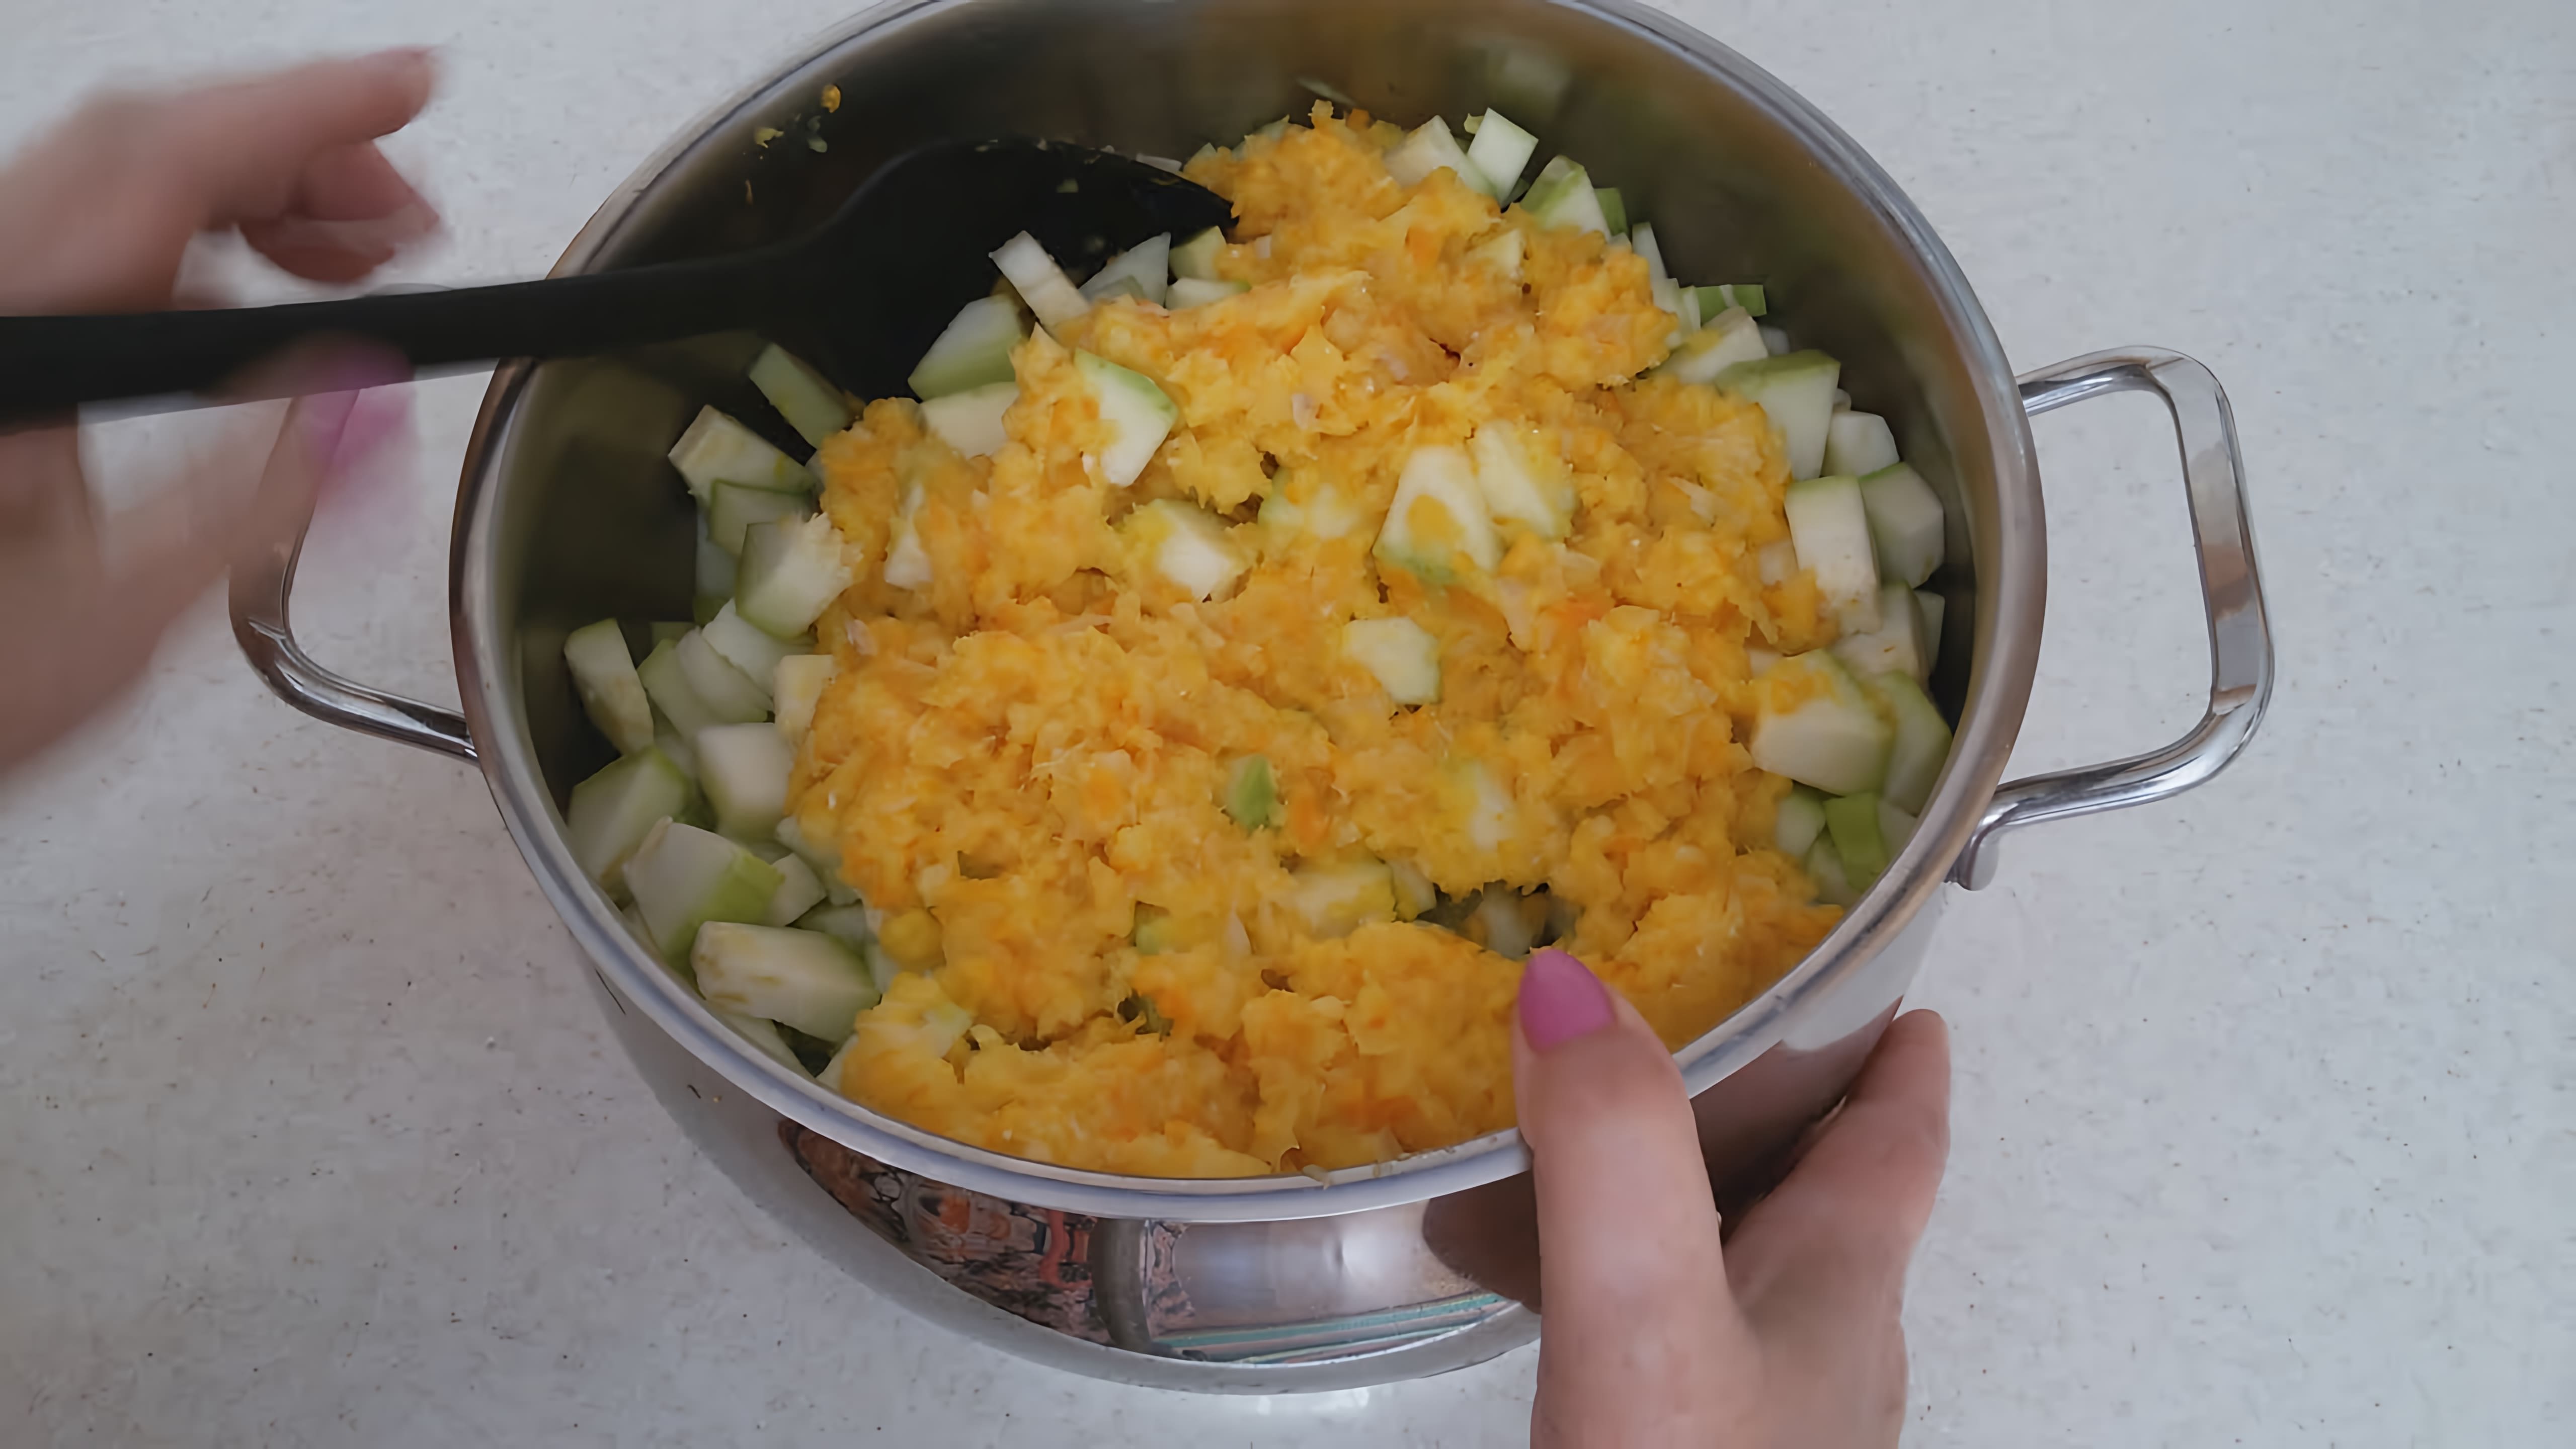 В этом видео демонстрируется рецепт приготовления янтарно-мраморного варенья из кабачков с добавлением апельсинов и лимонов